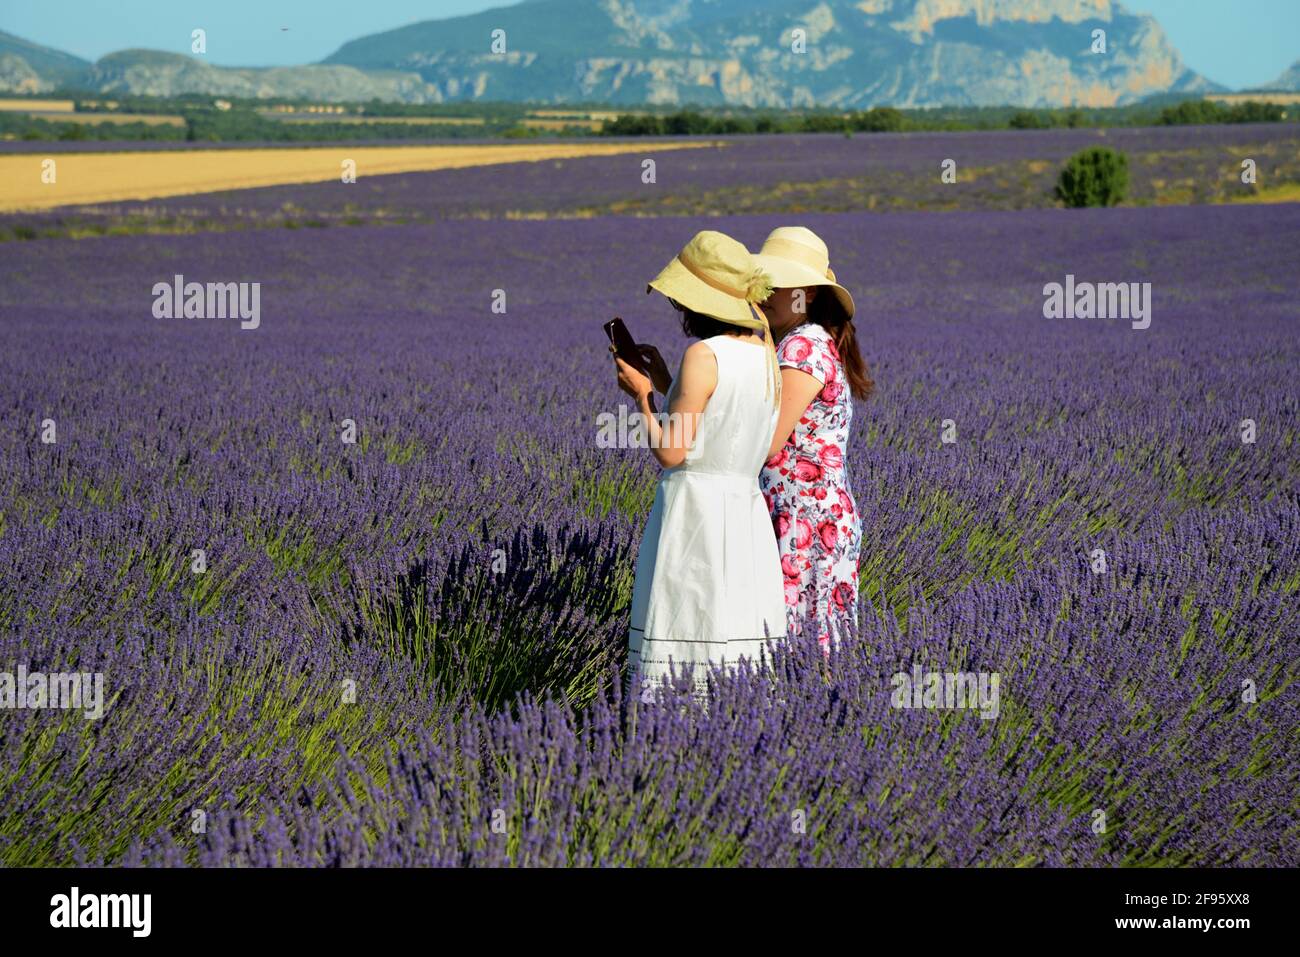 Ein paar chinesische Touristen, die Selfies in Lavendel betrachten Field Valensole Plateau Provence Frankreich Stockfoto